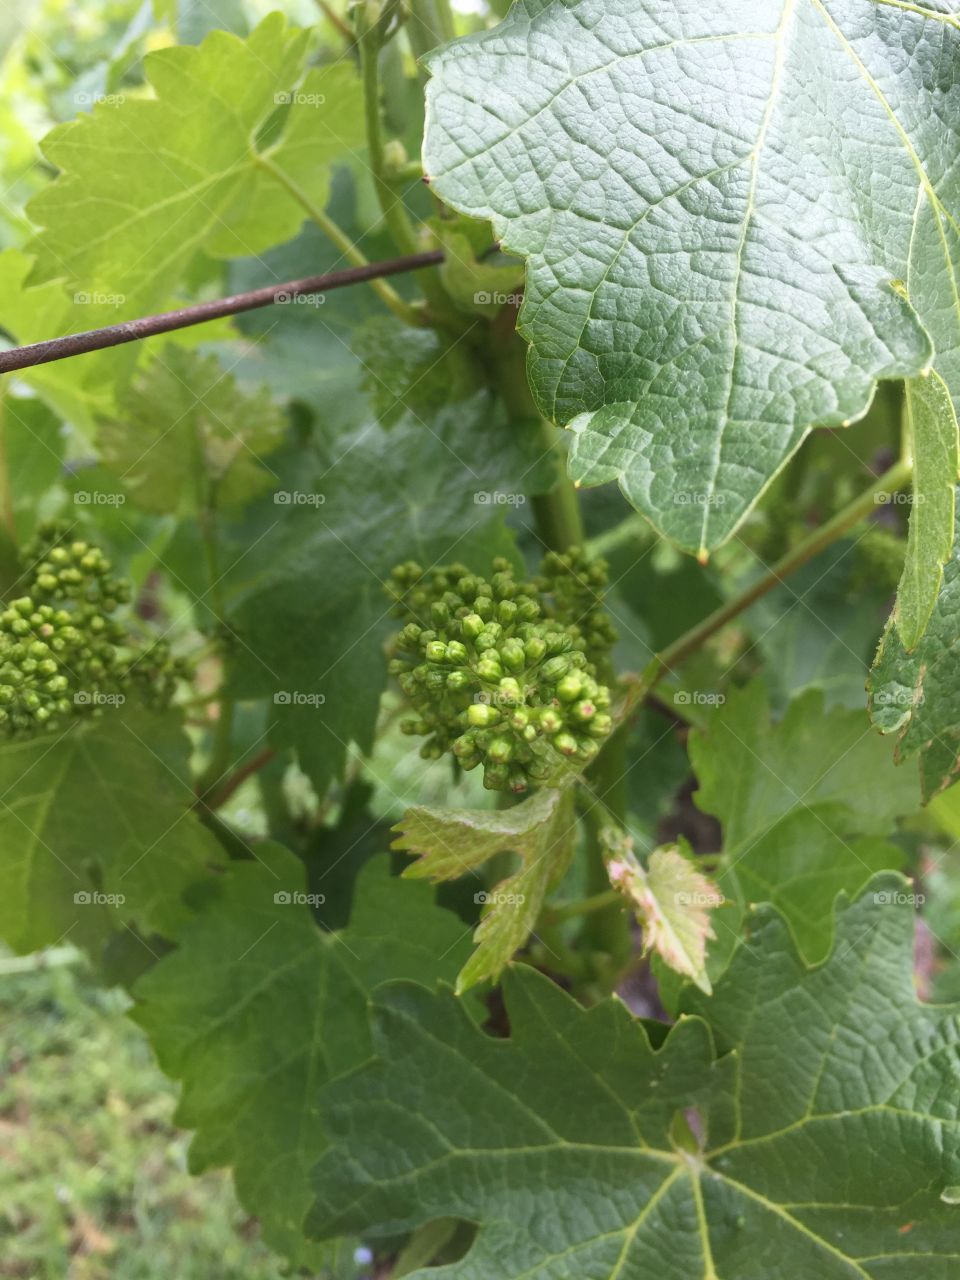 Baby grape vines